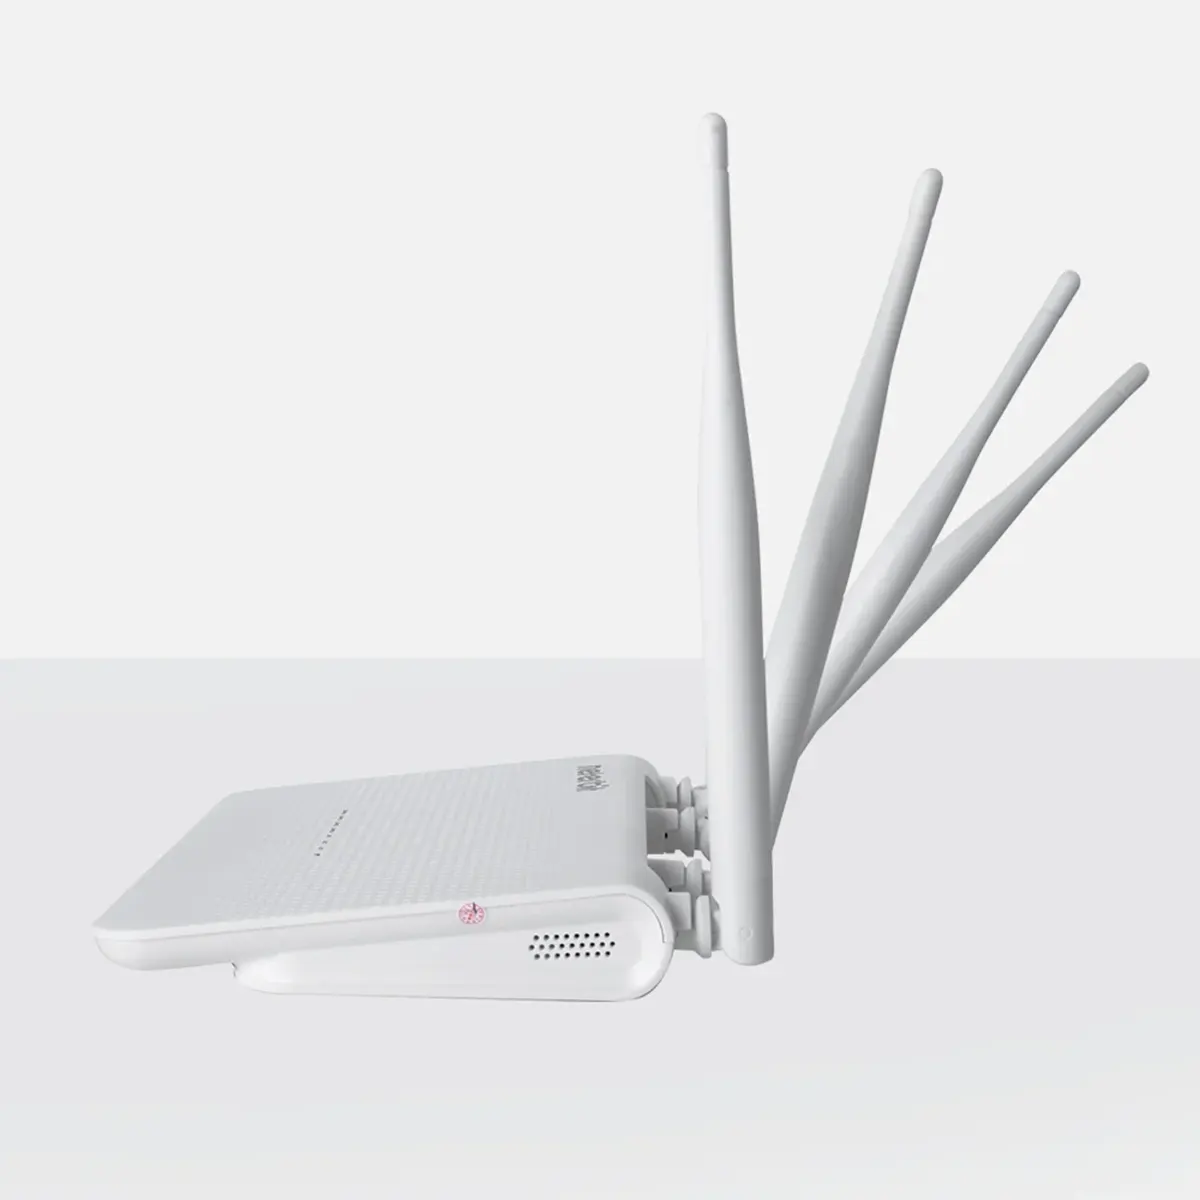 روتر 4G LTE بی سیم نتربیت مدل Neterbit NW-431F